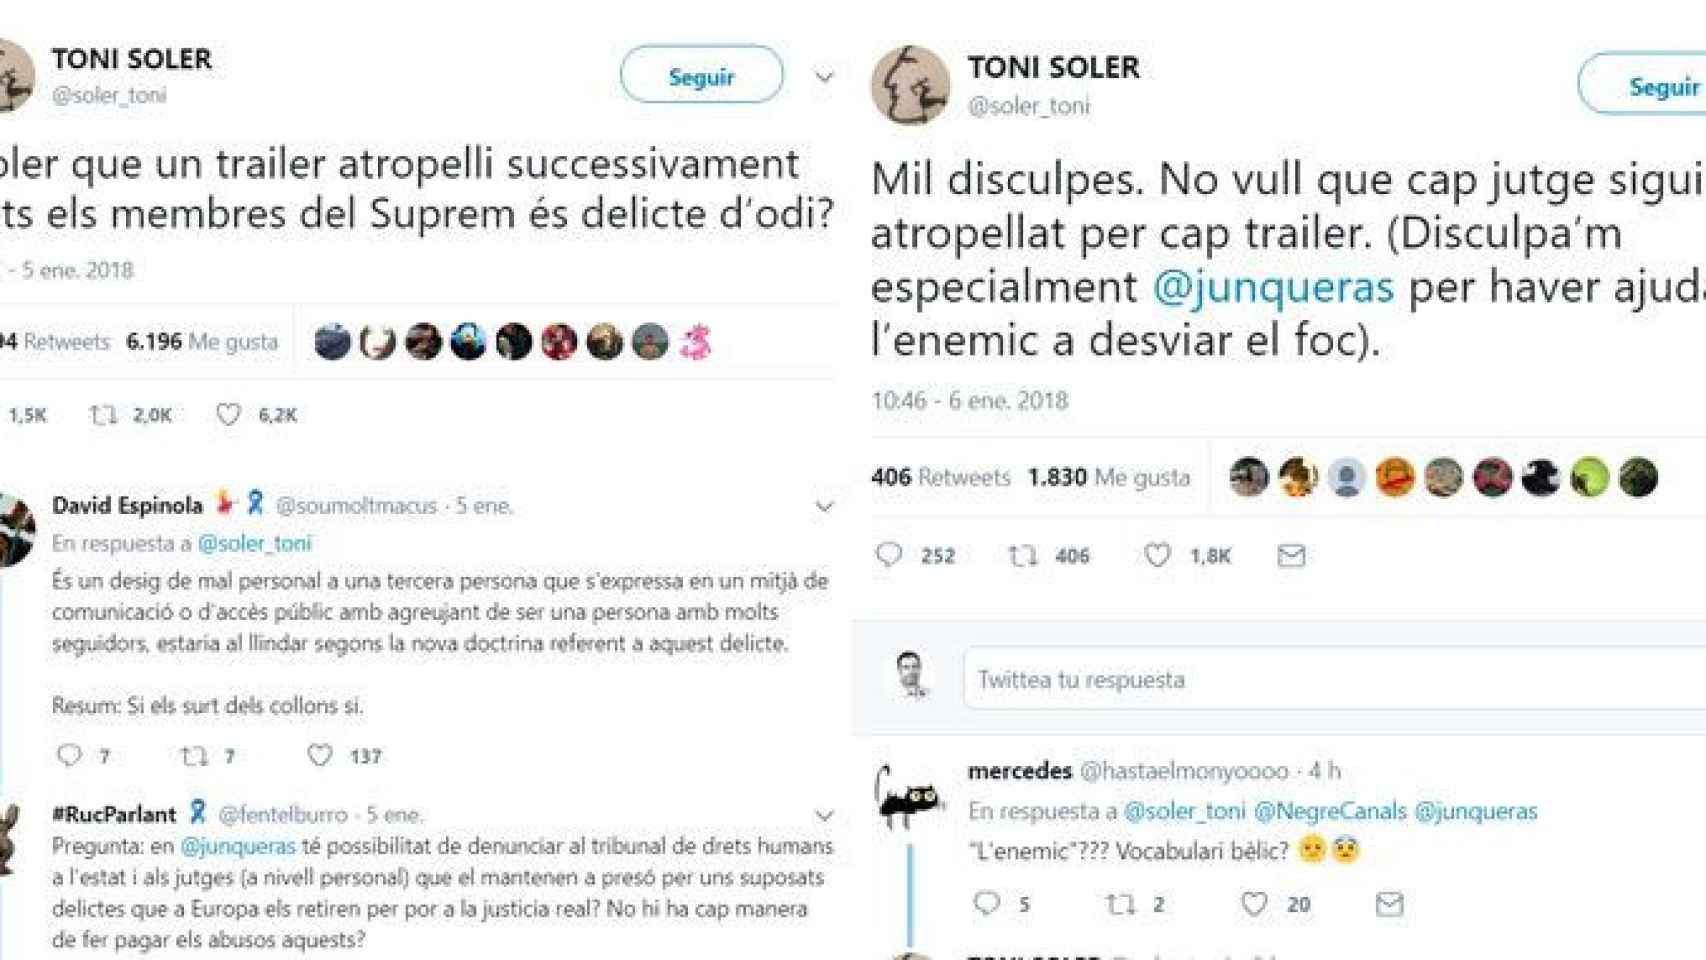 Toni Soler se disculpa... por haber ayudado al enemigo a desviar el fuego